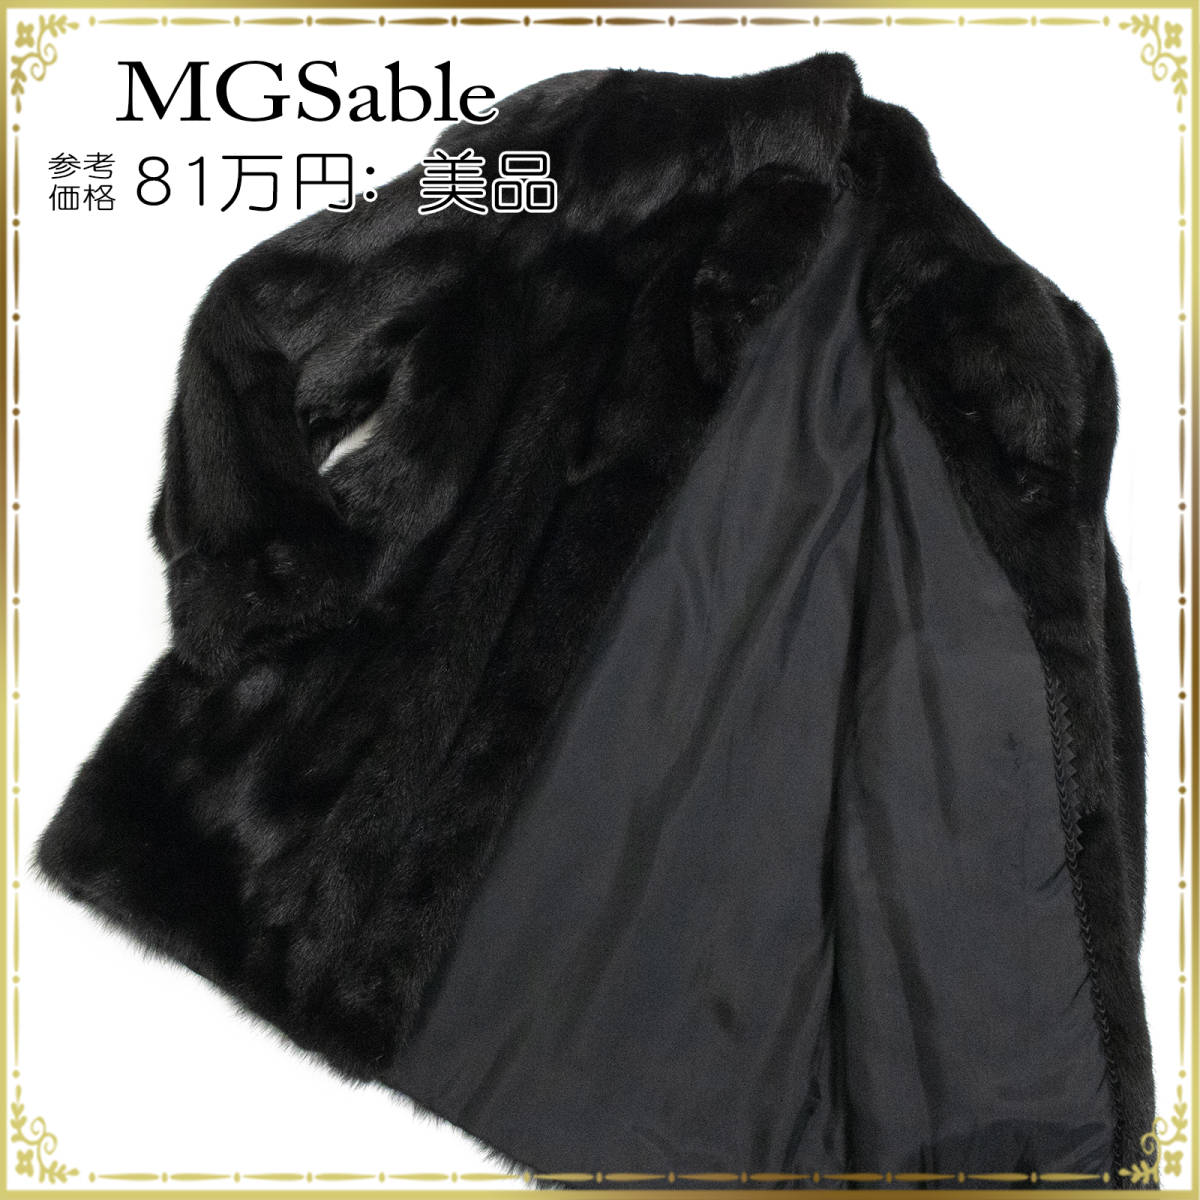 【全額返金保証・送料無料・美品】エムジーセーブル MGSableのファーコート 正規品 リアルミンクファー 毛皮 綺麗 ブラック 高級 セレブ感